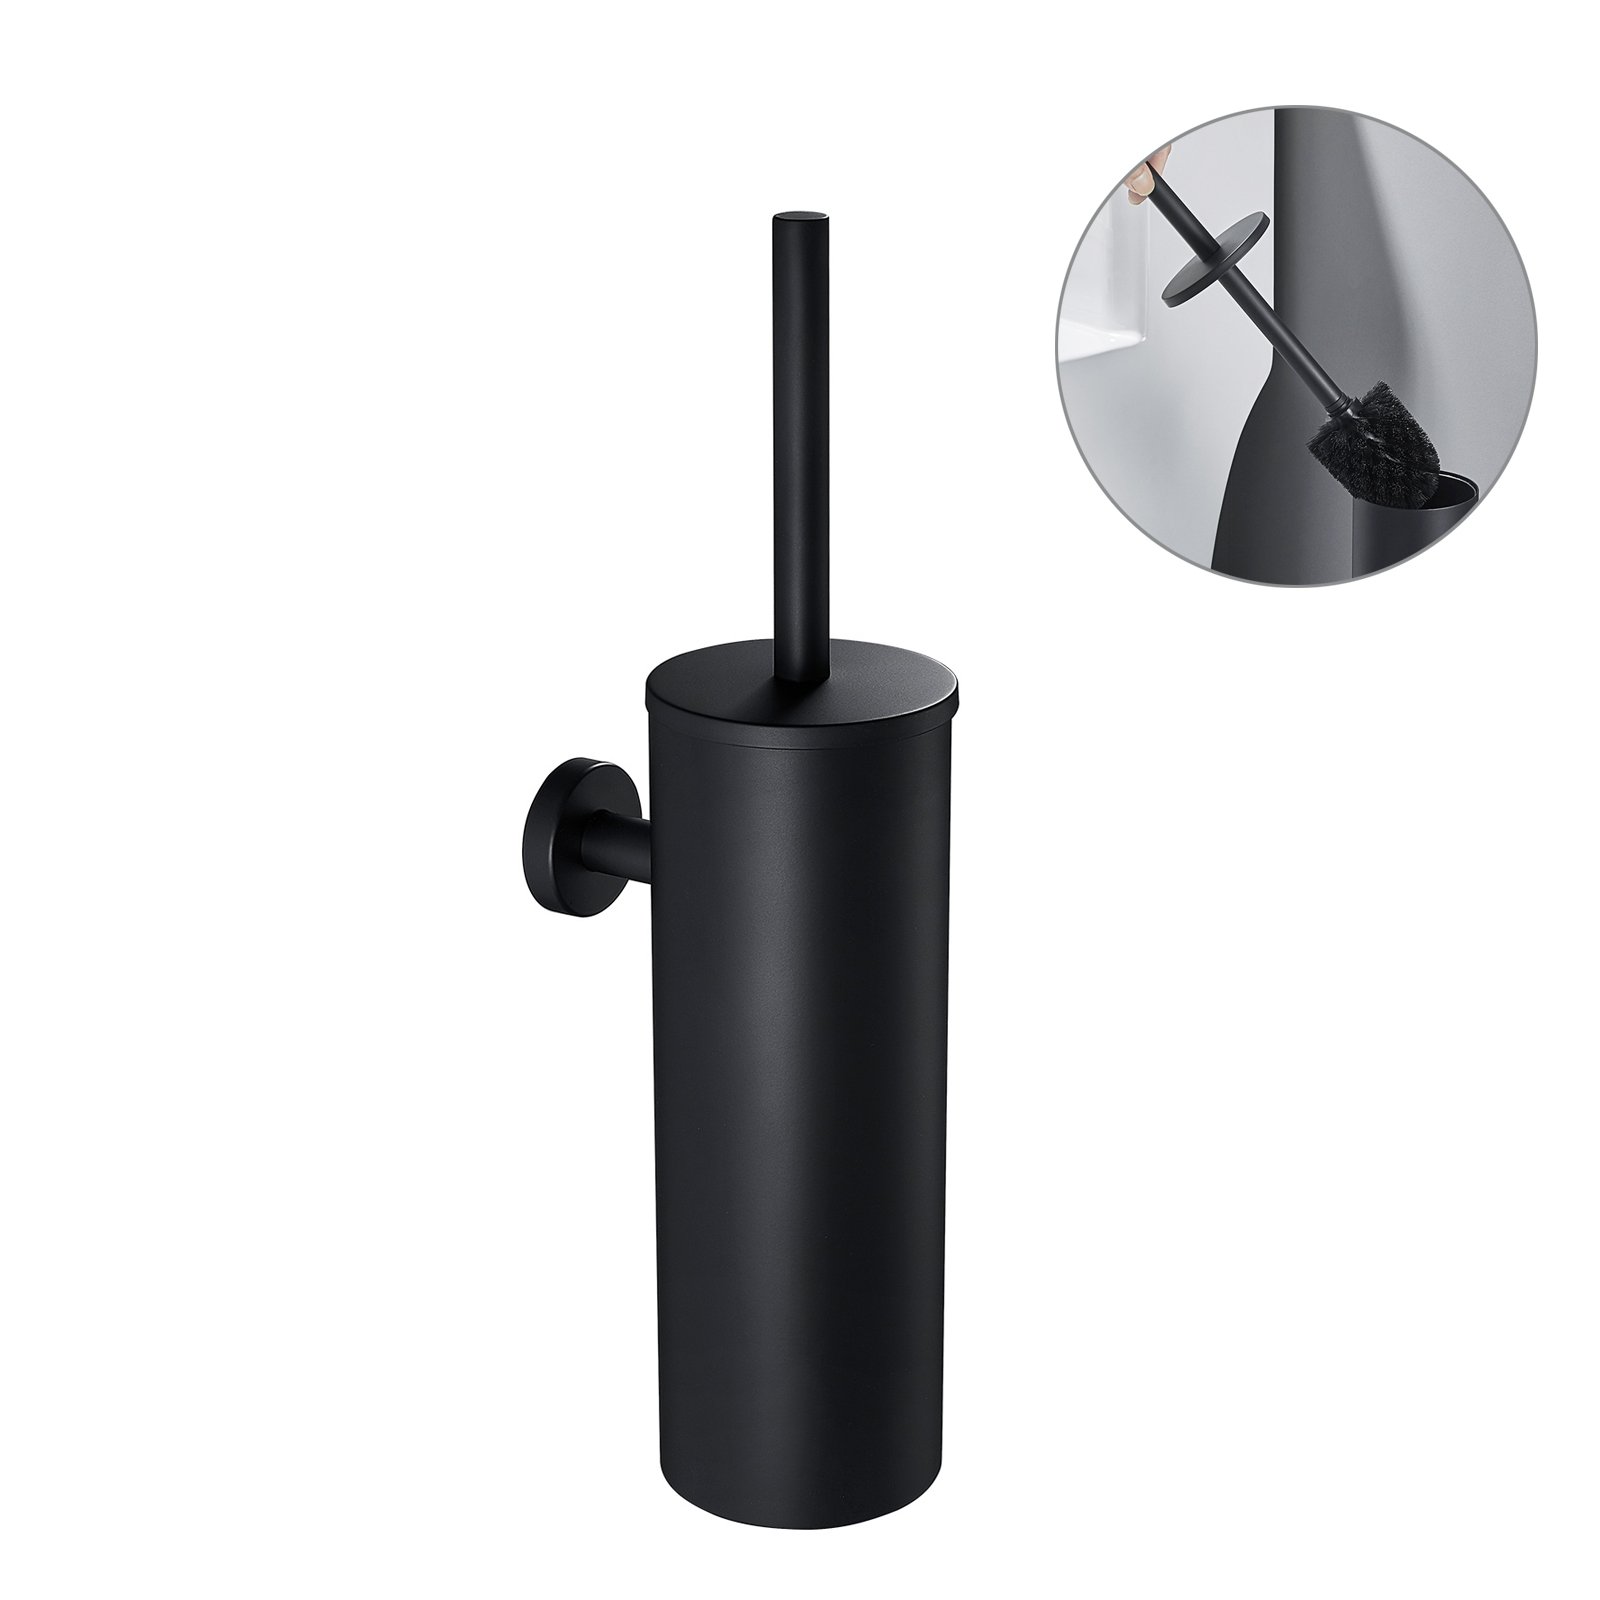 Escobillero Negro Auralum Escobilla de inodoro Negra Cepillo de Baño/ WC  montado en la pared de